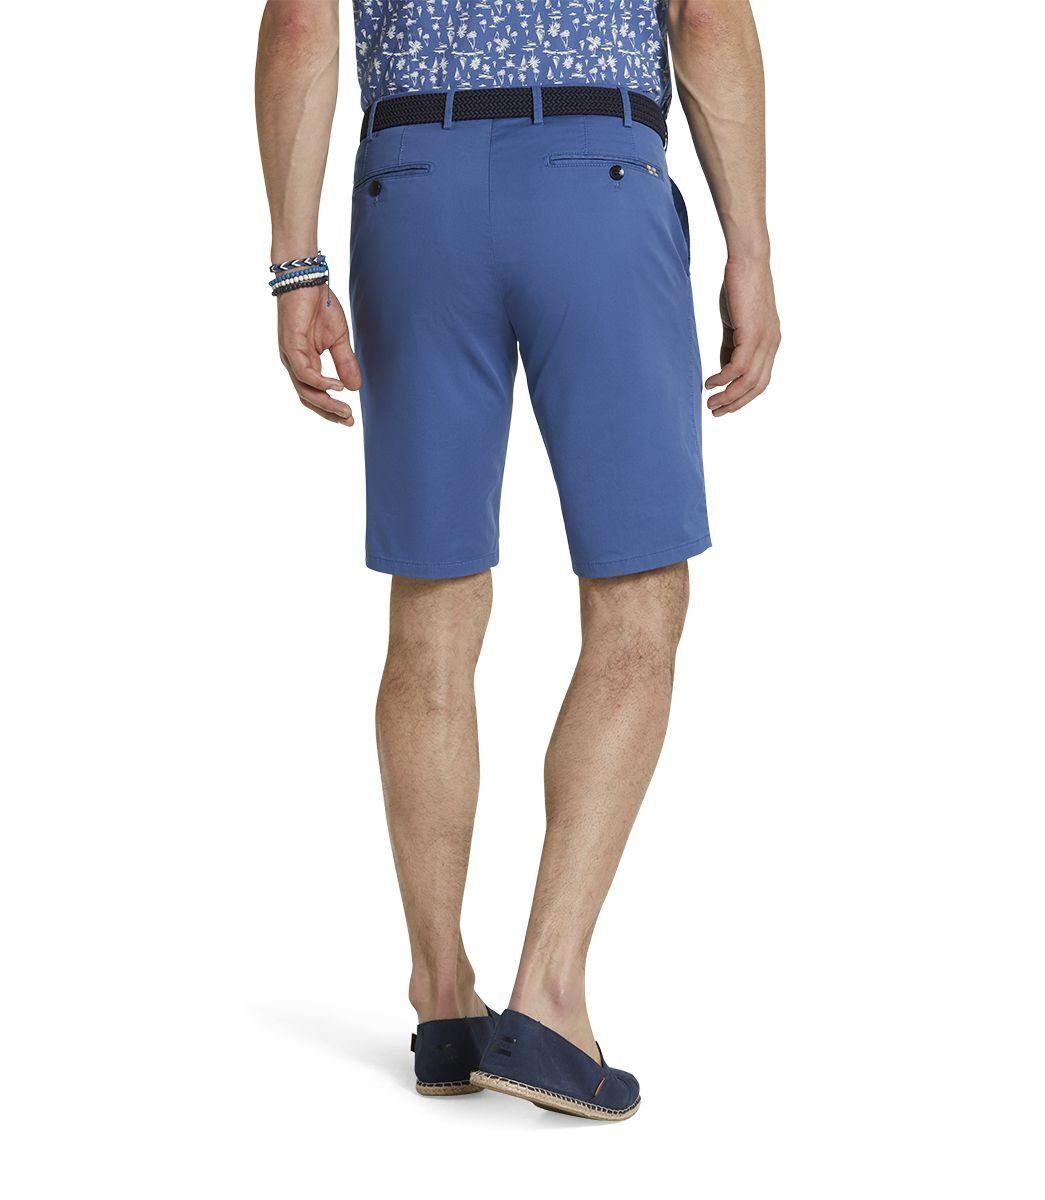 MEYER Shorts mit französischen Einschubtaschen blau